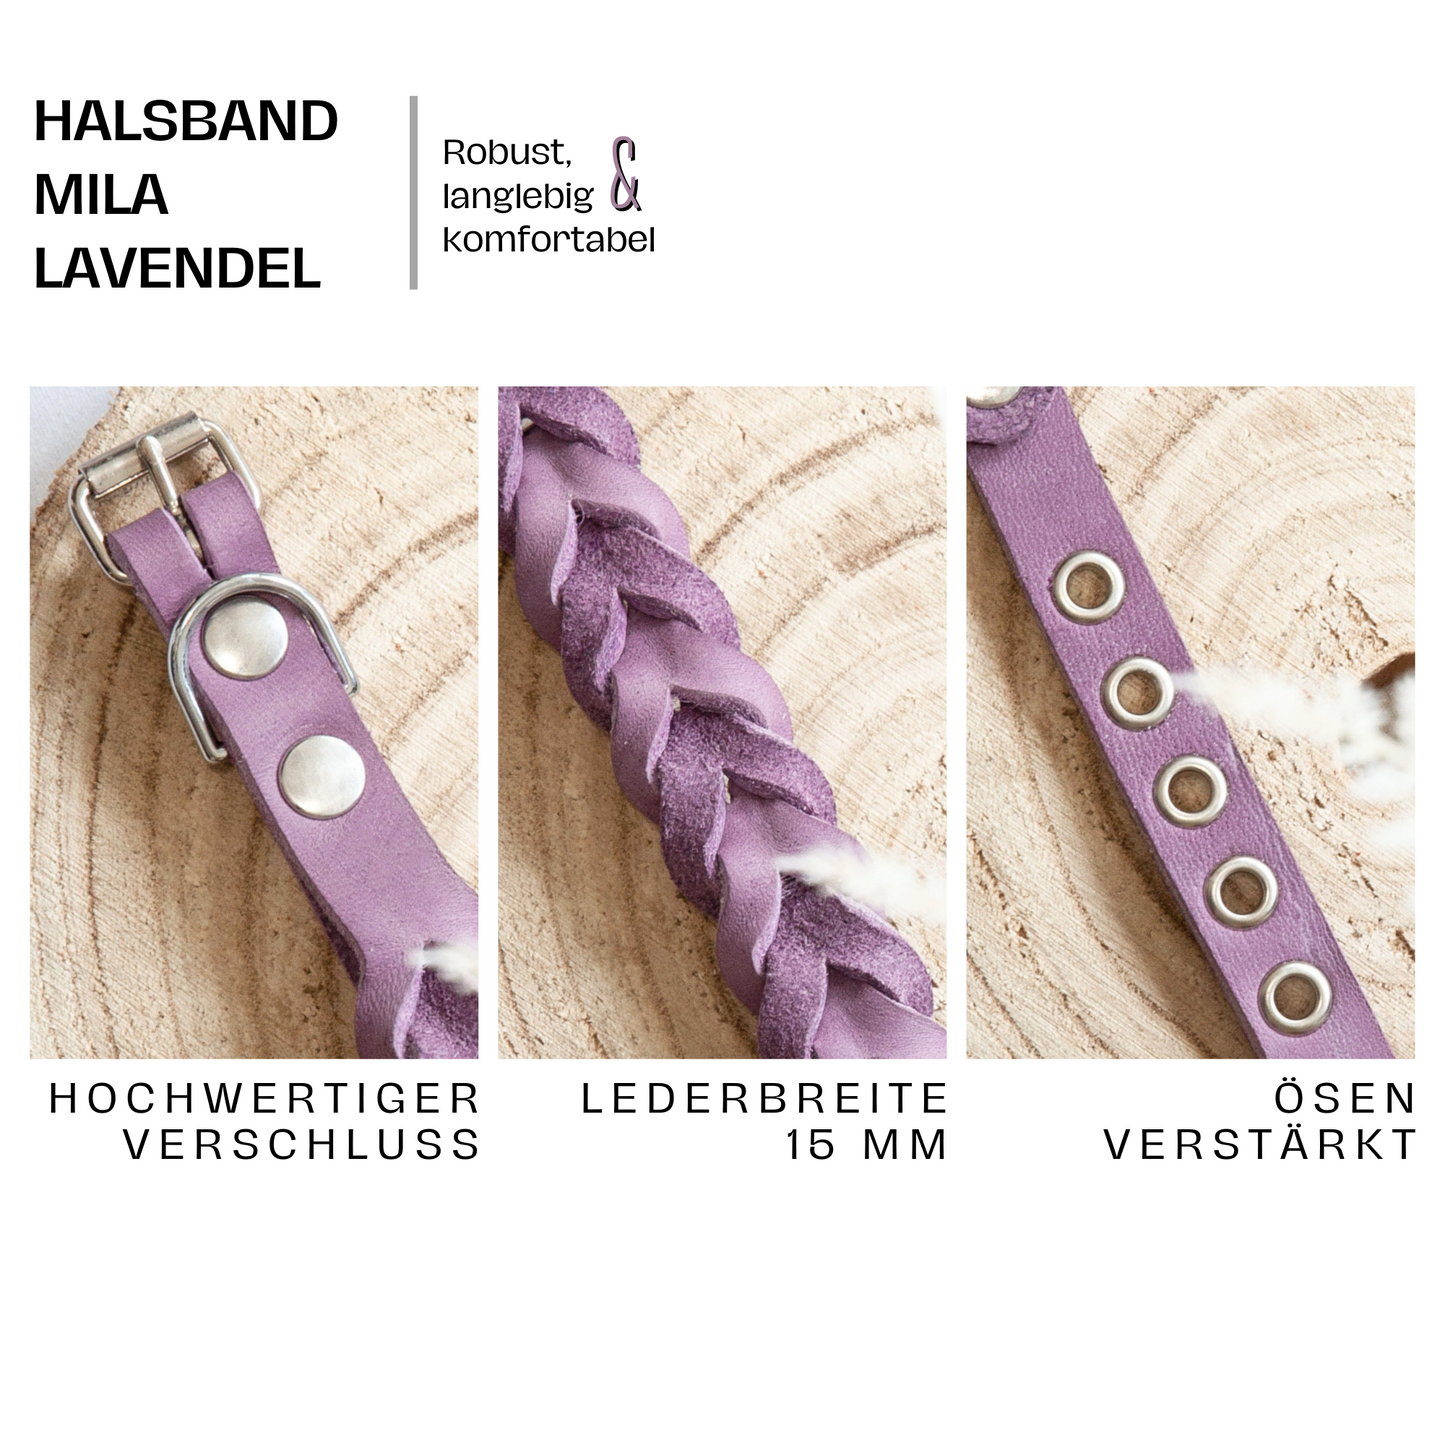 Halsband MILA aus Leder. Hundehalsband aus geflochtenem Leder in der Farbe Lavendel. Lederhalsband für Fellnasen. Detail